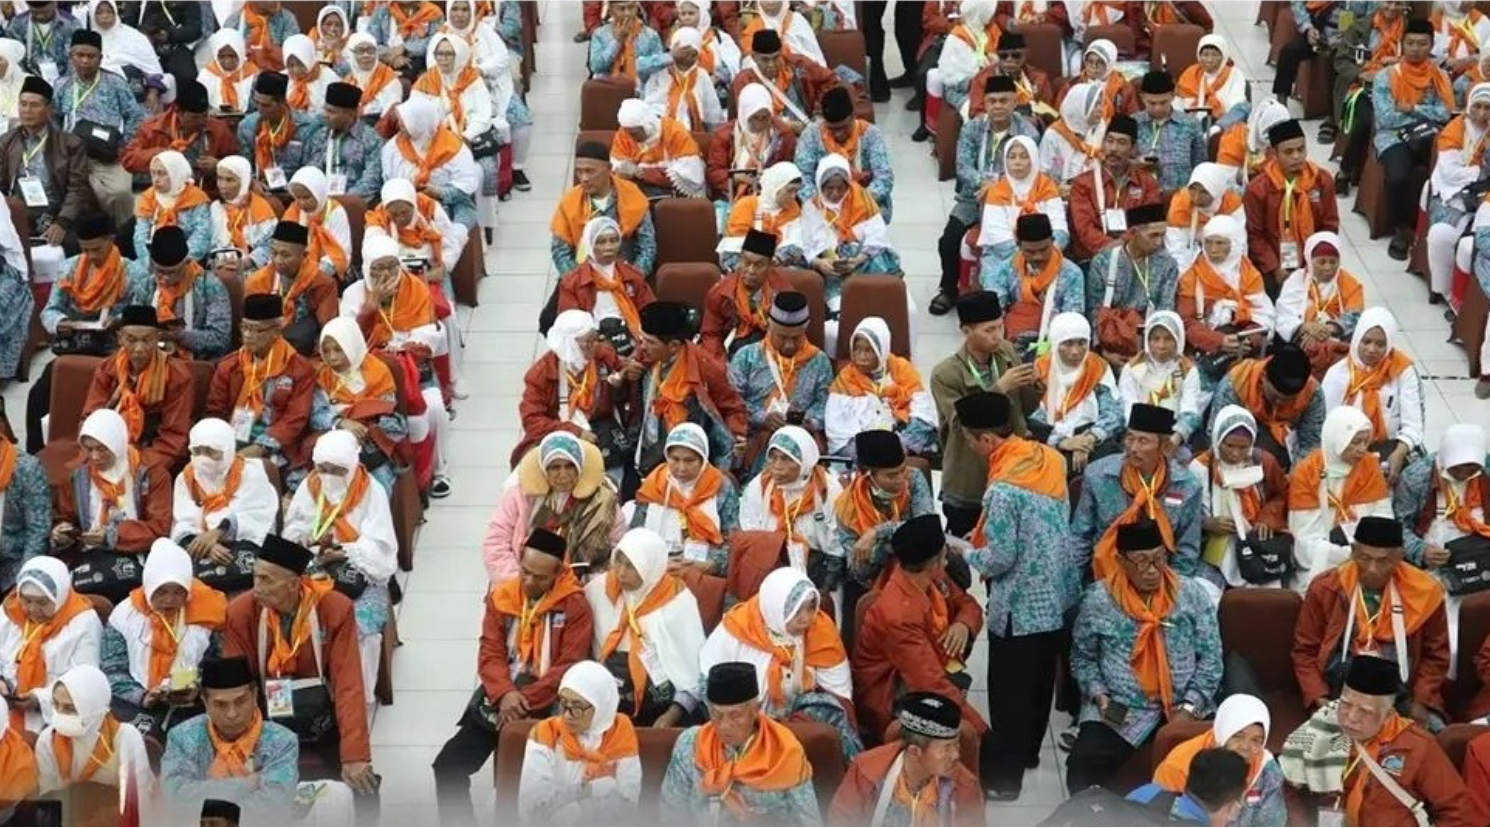 Wajib Dicatat! Gelang Identitas Jemaah Haji Indonesia Tidak Boleh Ditukar atau Dilepas